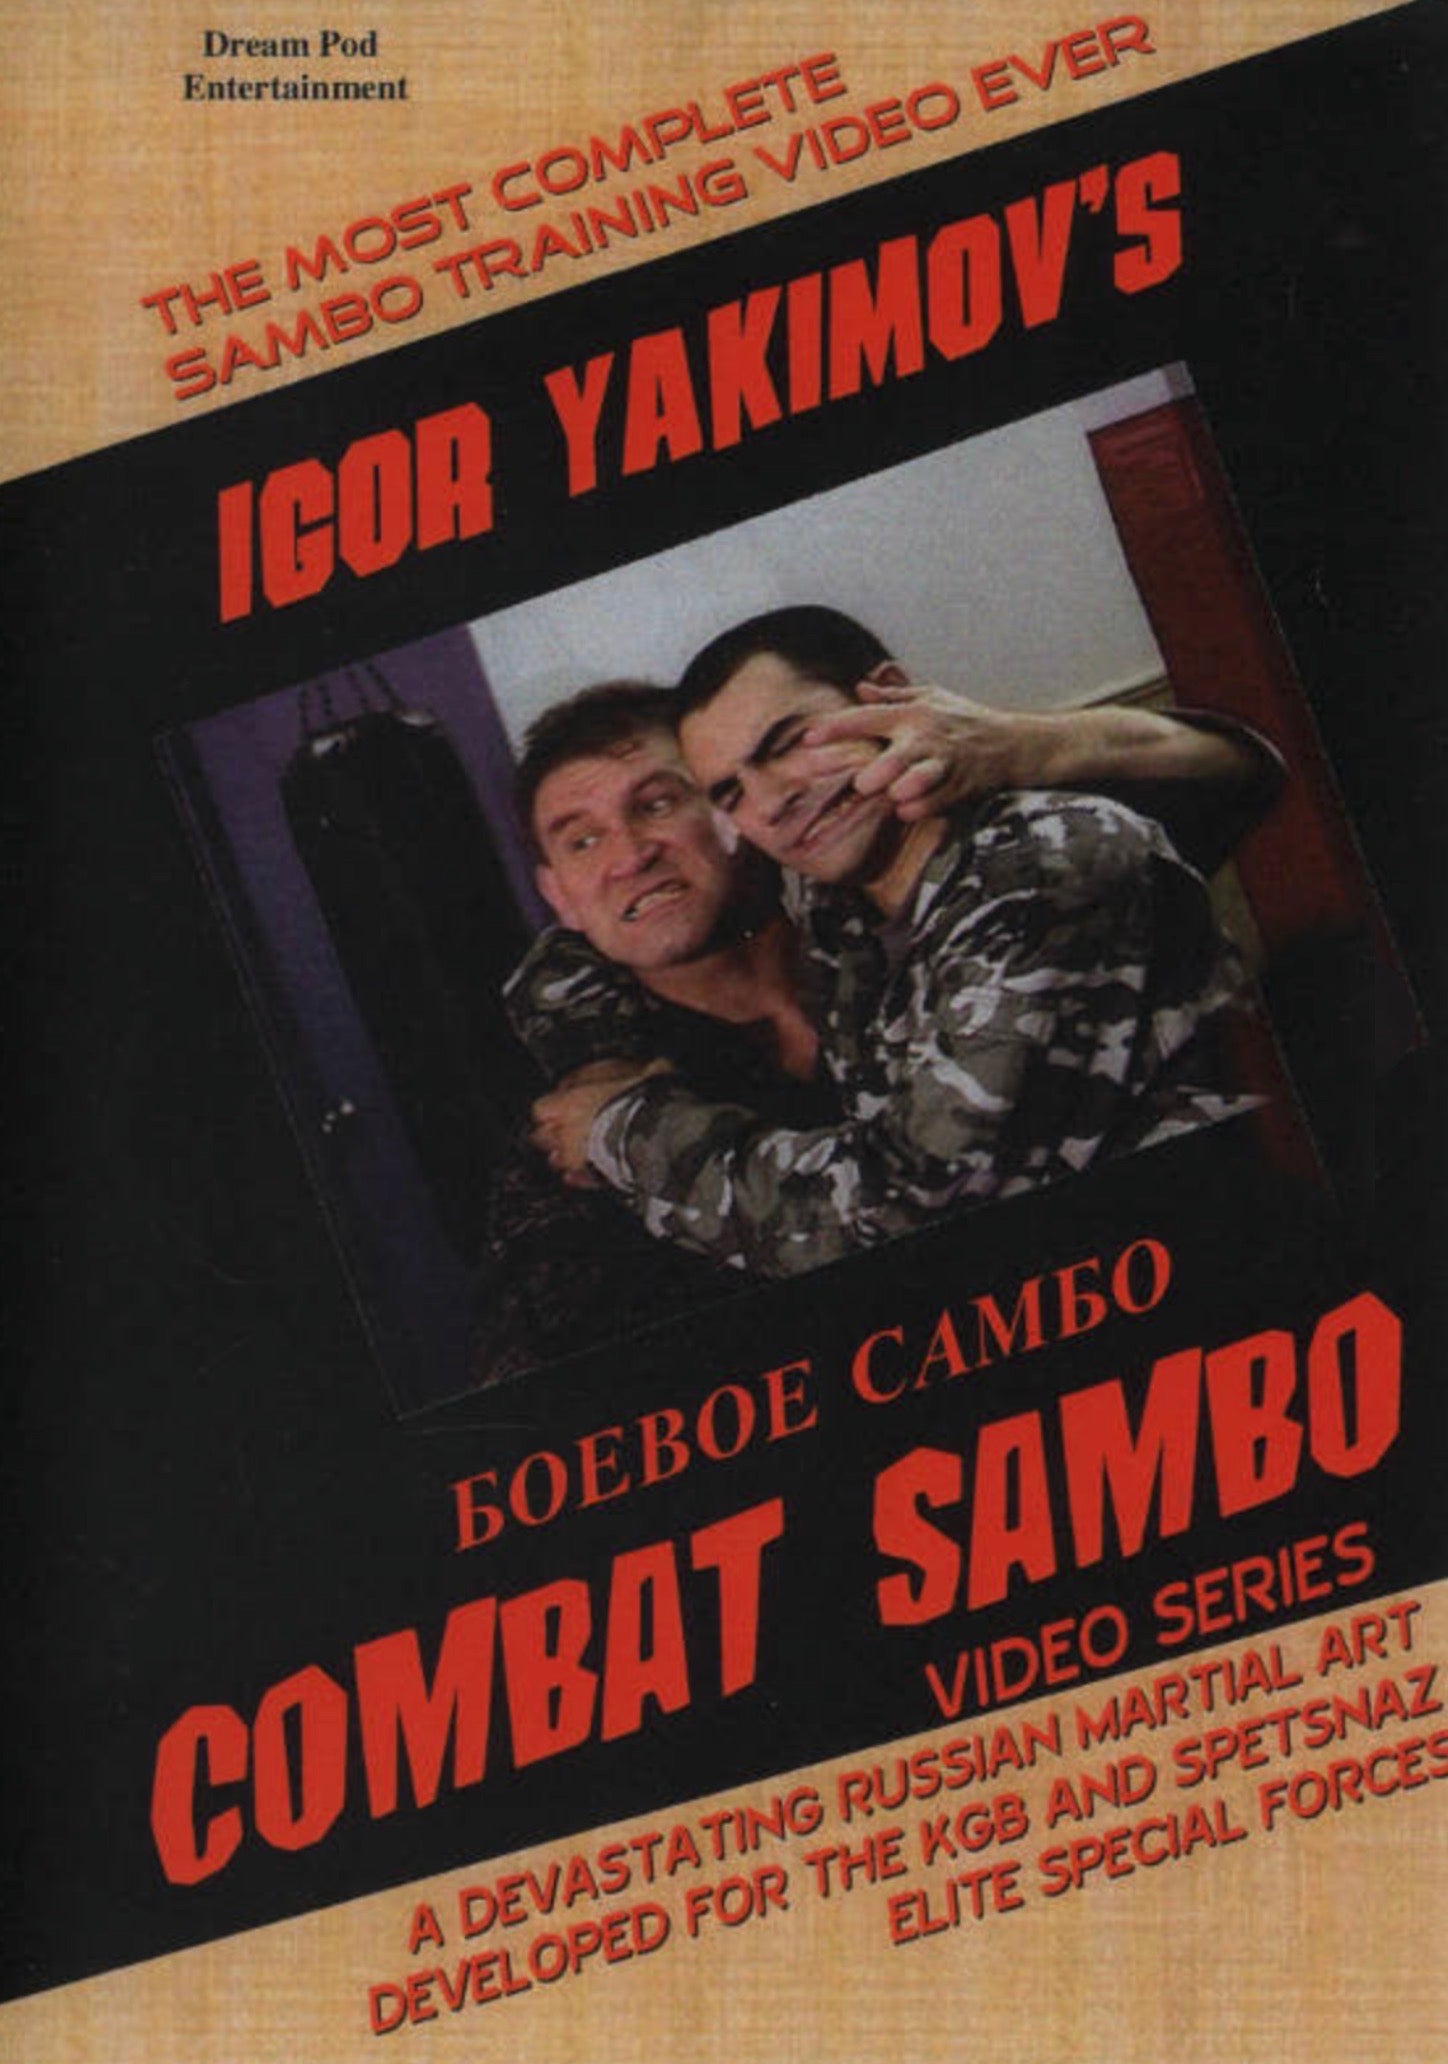 Combat Sambo Series by Igor Yakimov (On Demand)